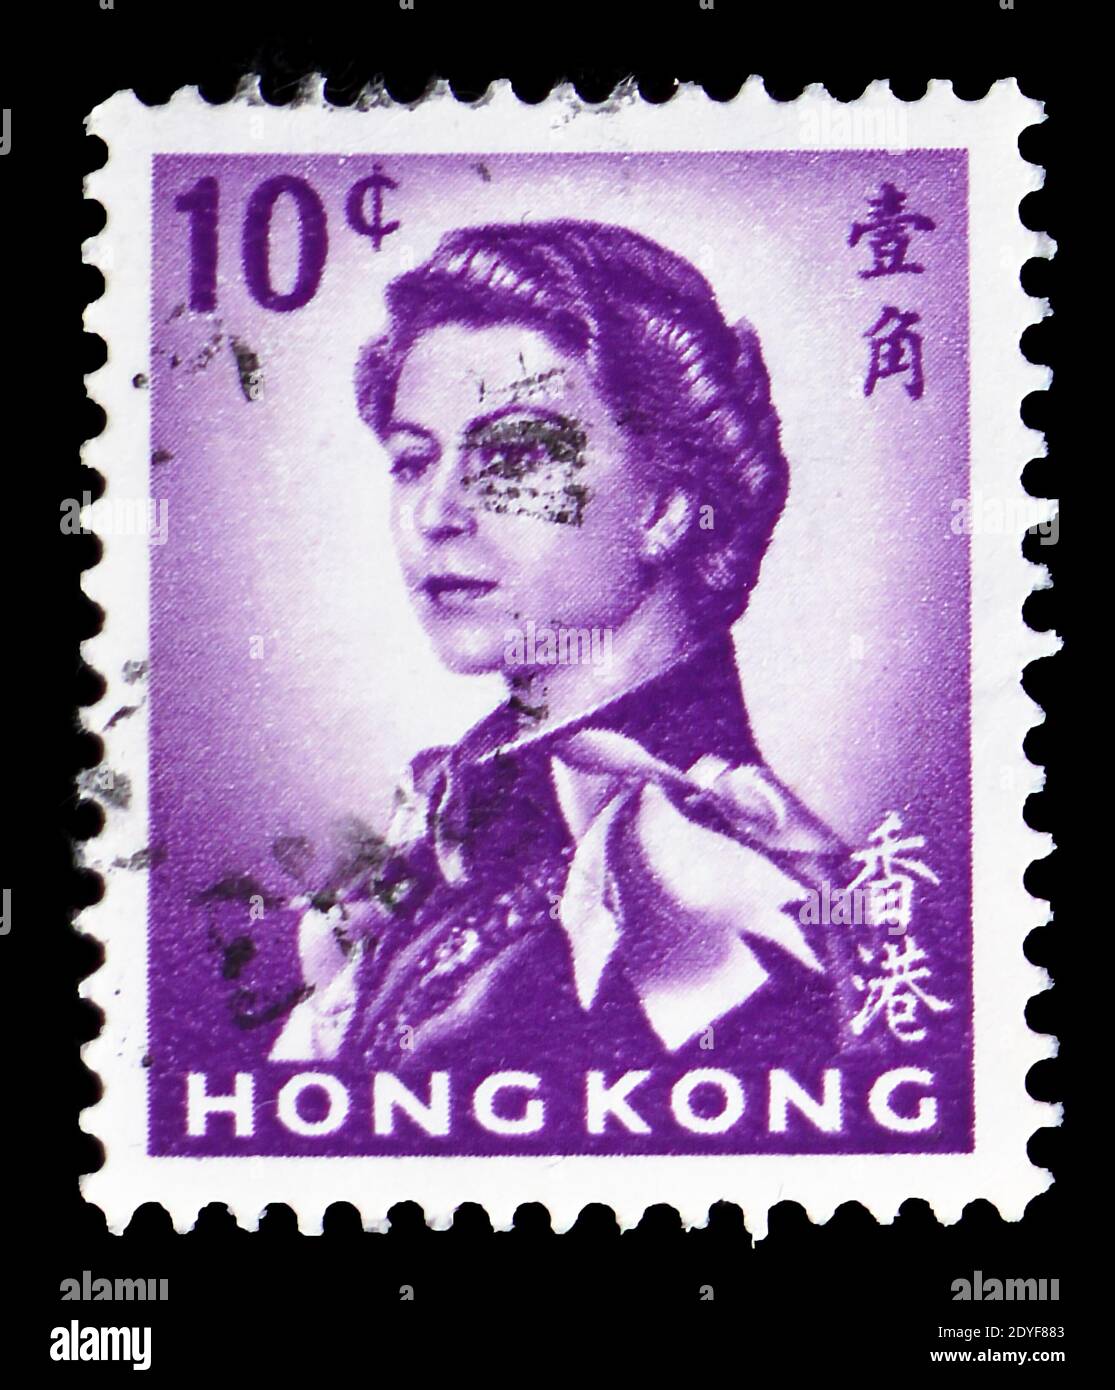 MOSCOU, RUSSIE - 23 MARS 2019 : un timbre imprimé à Hong Kong montre la reine Elizabeth II, série, vers 1972 Banque D'Images